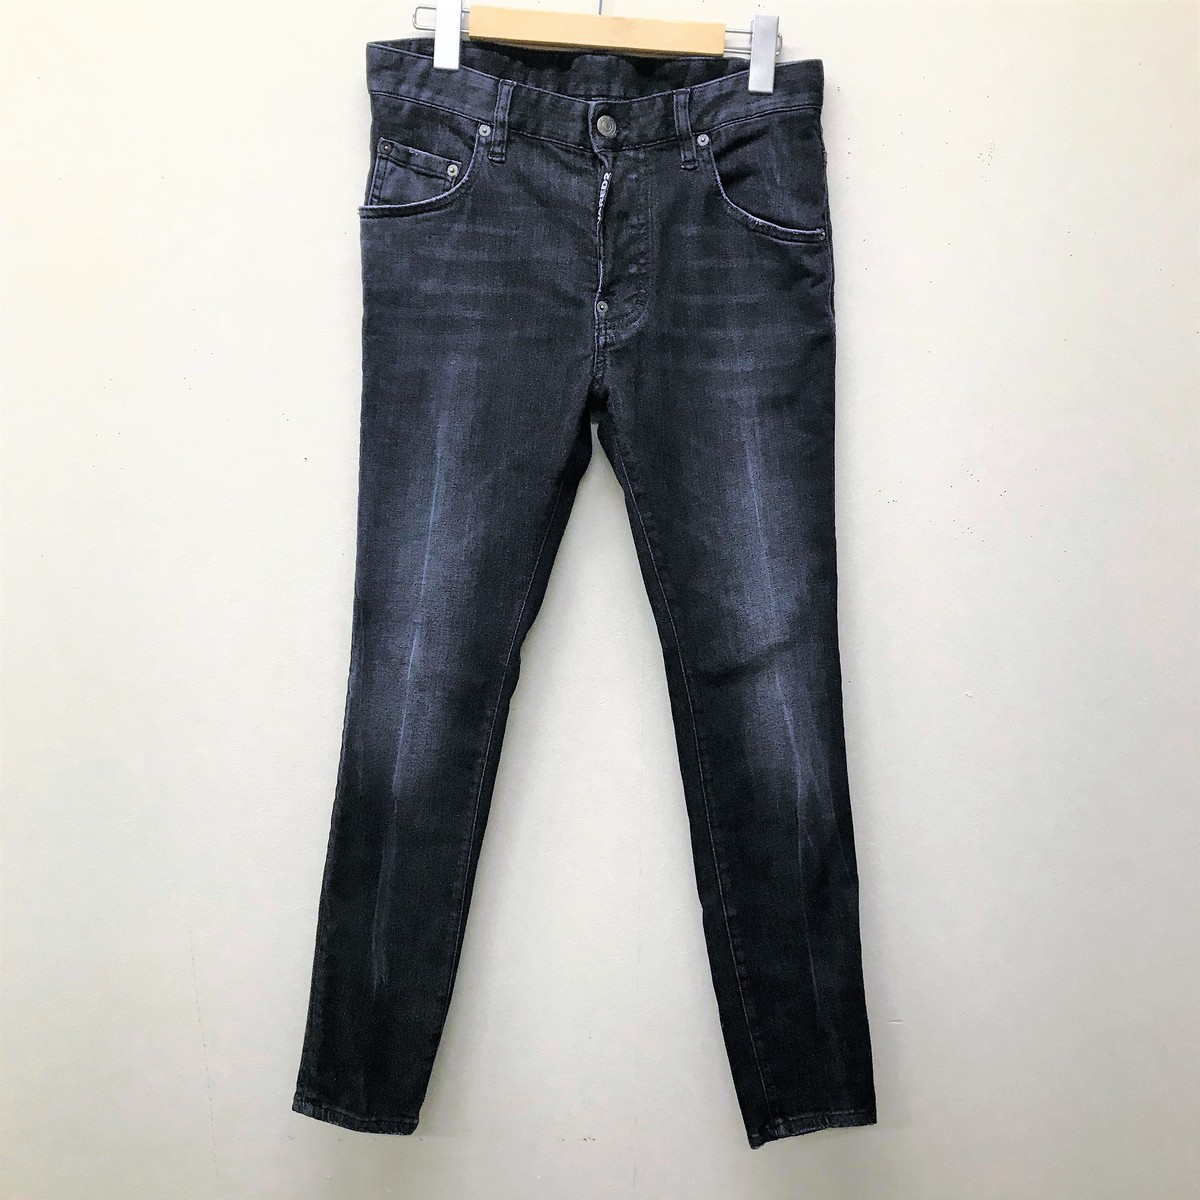 ディースクエアードのS71LB0738 20SS 黒 Super Twinky Jeansの買取実績です。